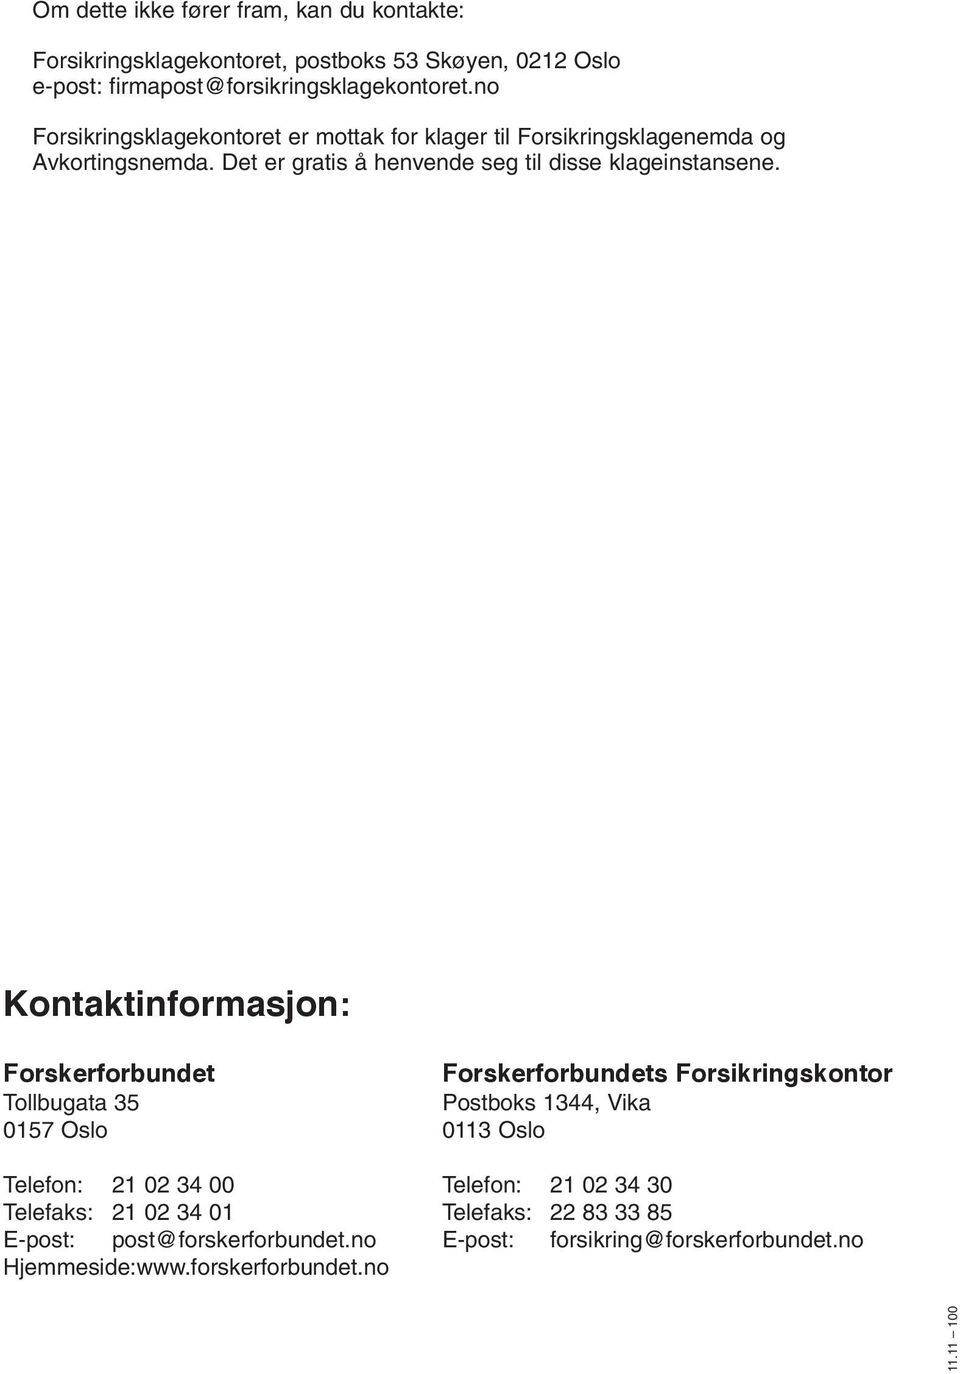 Kontaktinformasjon: Forskerforbundet Forskerforbundets Forsikringskontor Tollbugata 35 Postboks 1344, Vika 0157 Oslo 0113 Oslo Telefon: 21 02 34 00